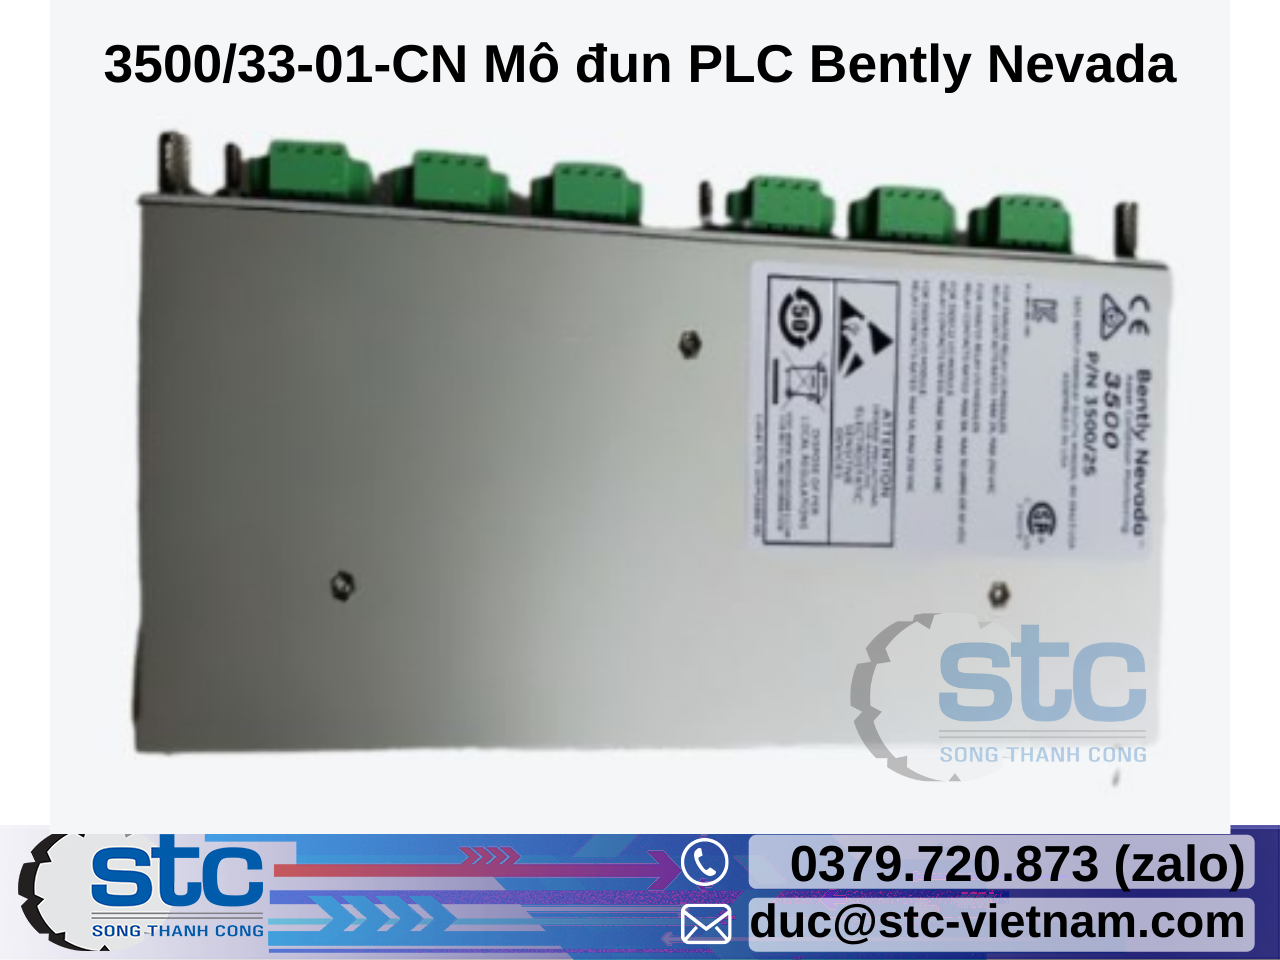 3500-33-01-cn-mo-dun-plc-bently-nevada.png